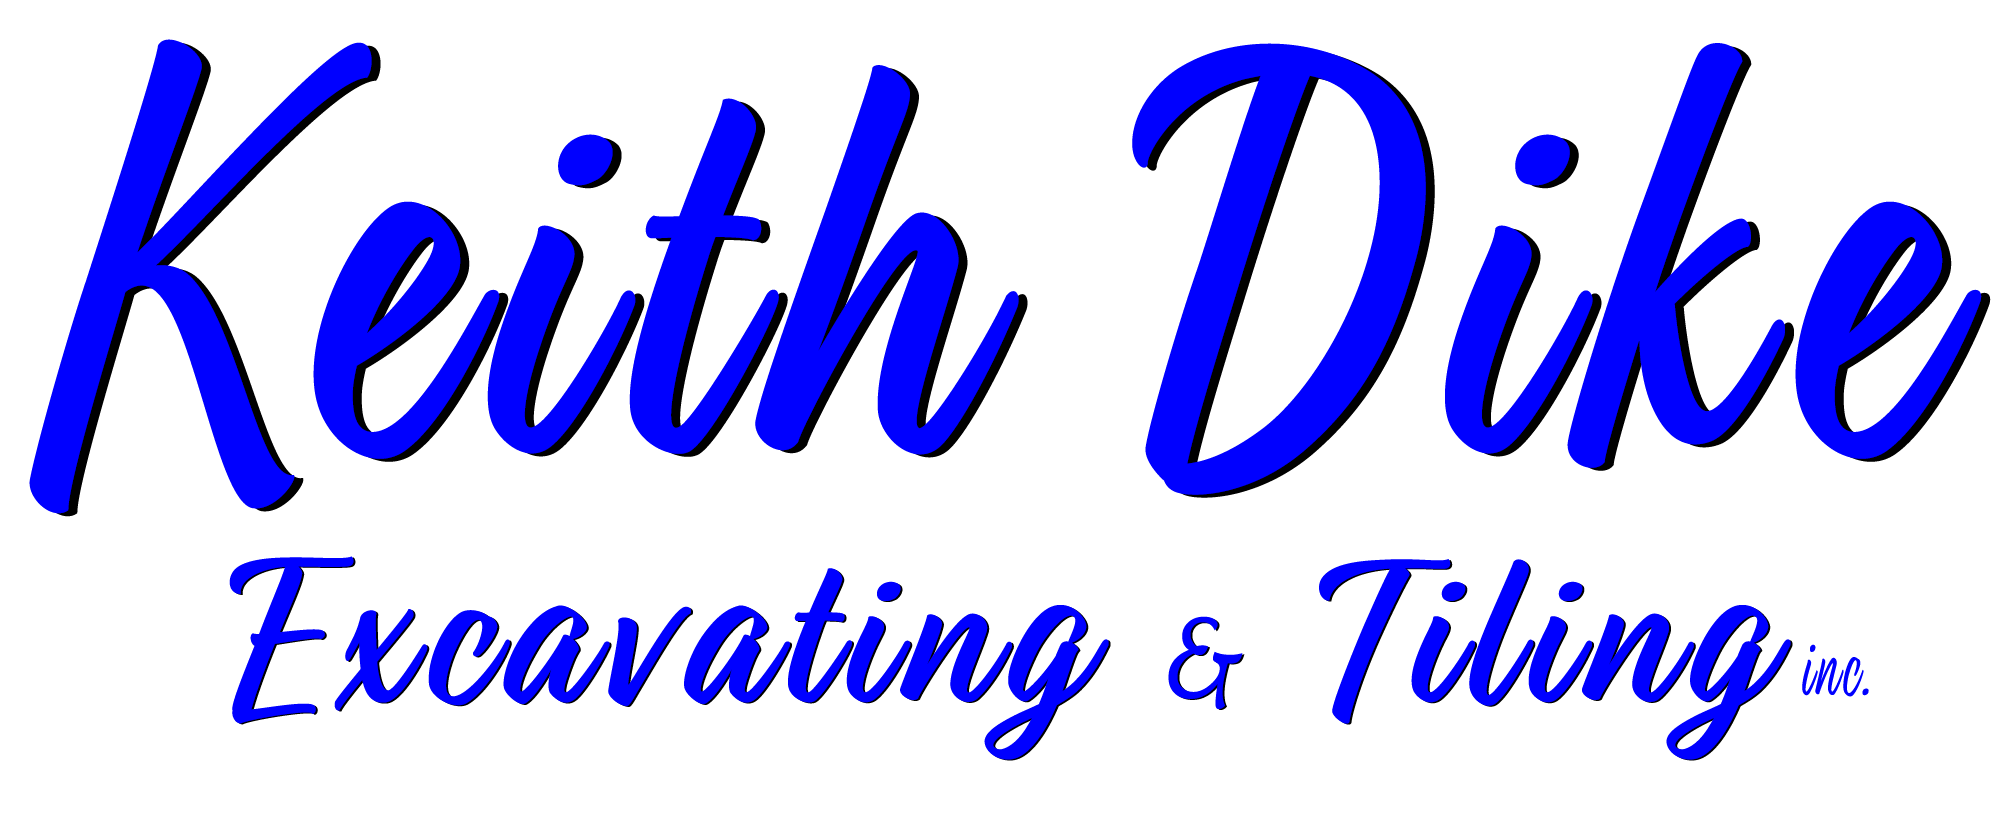 Keith Dike Logo 2 transparent